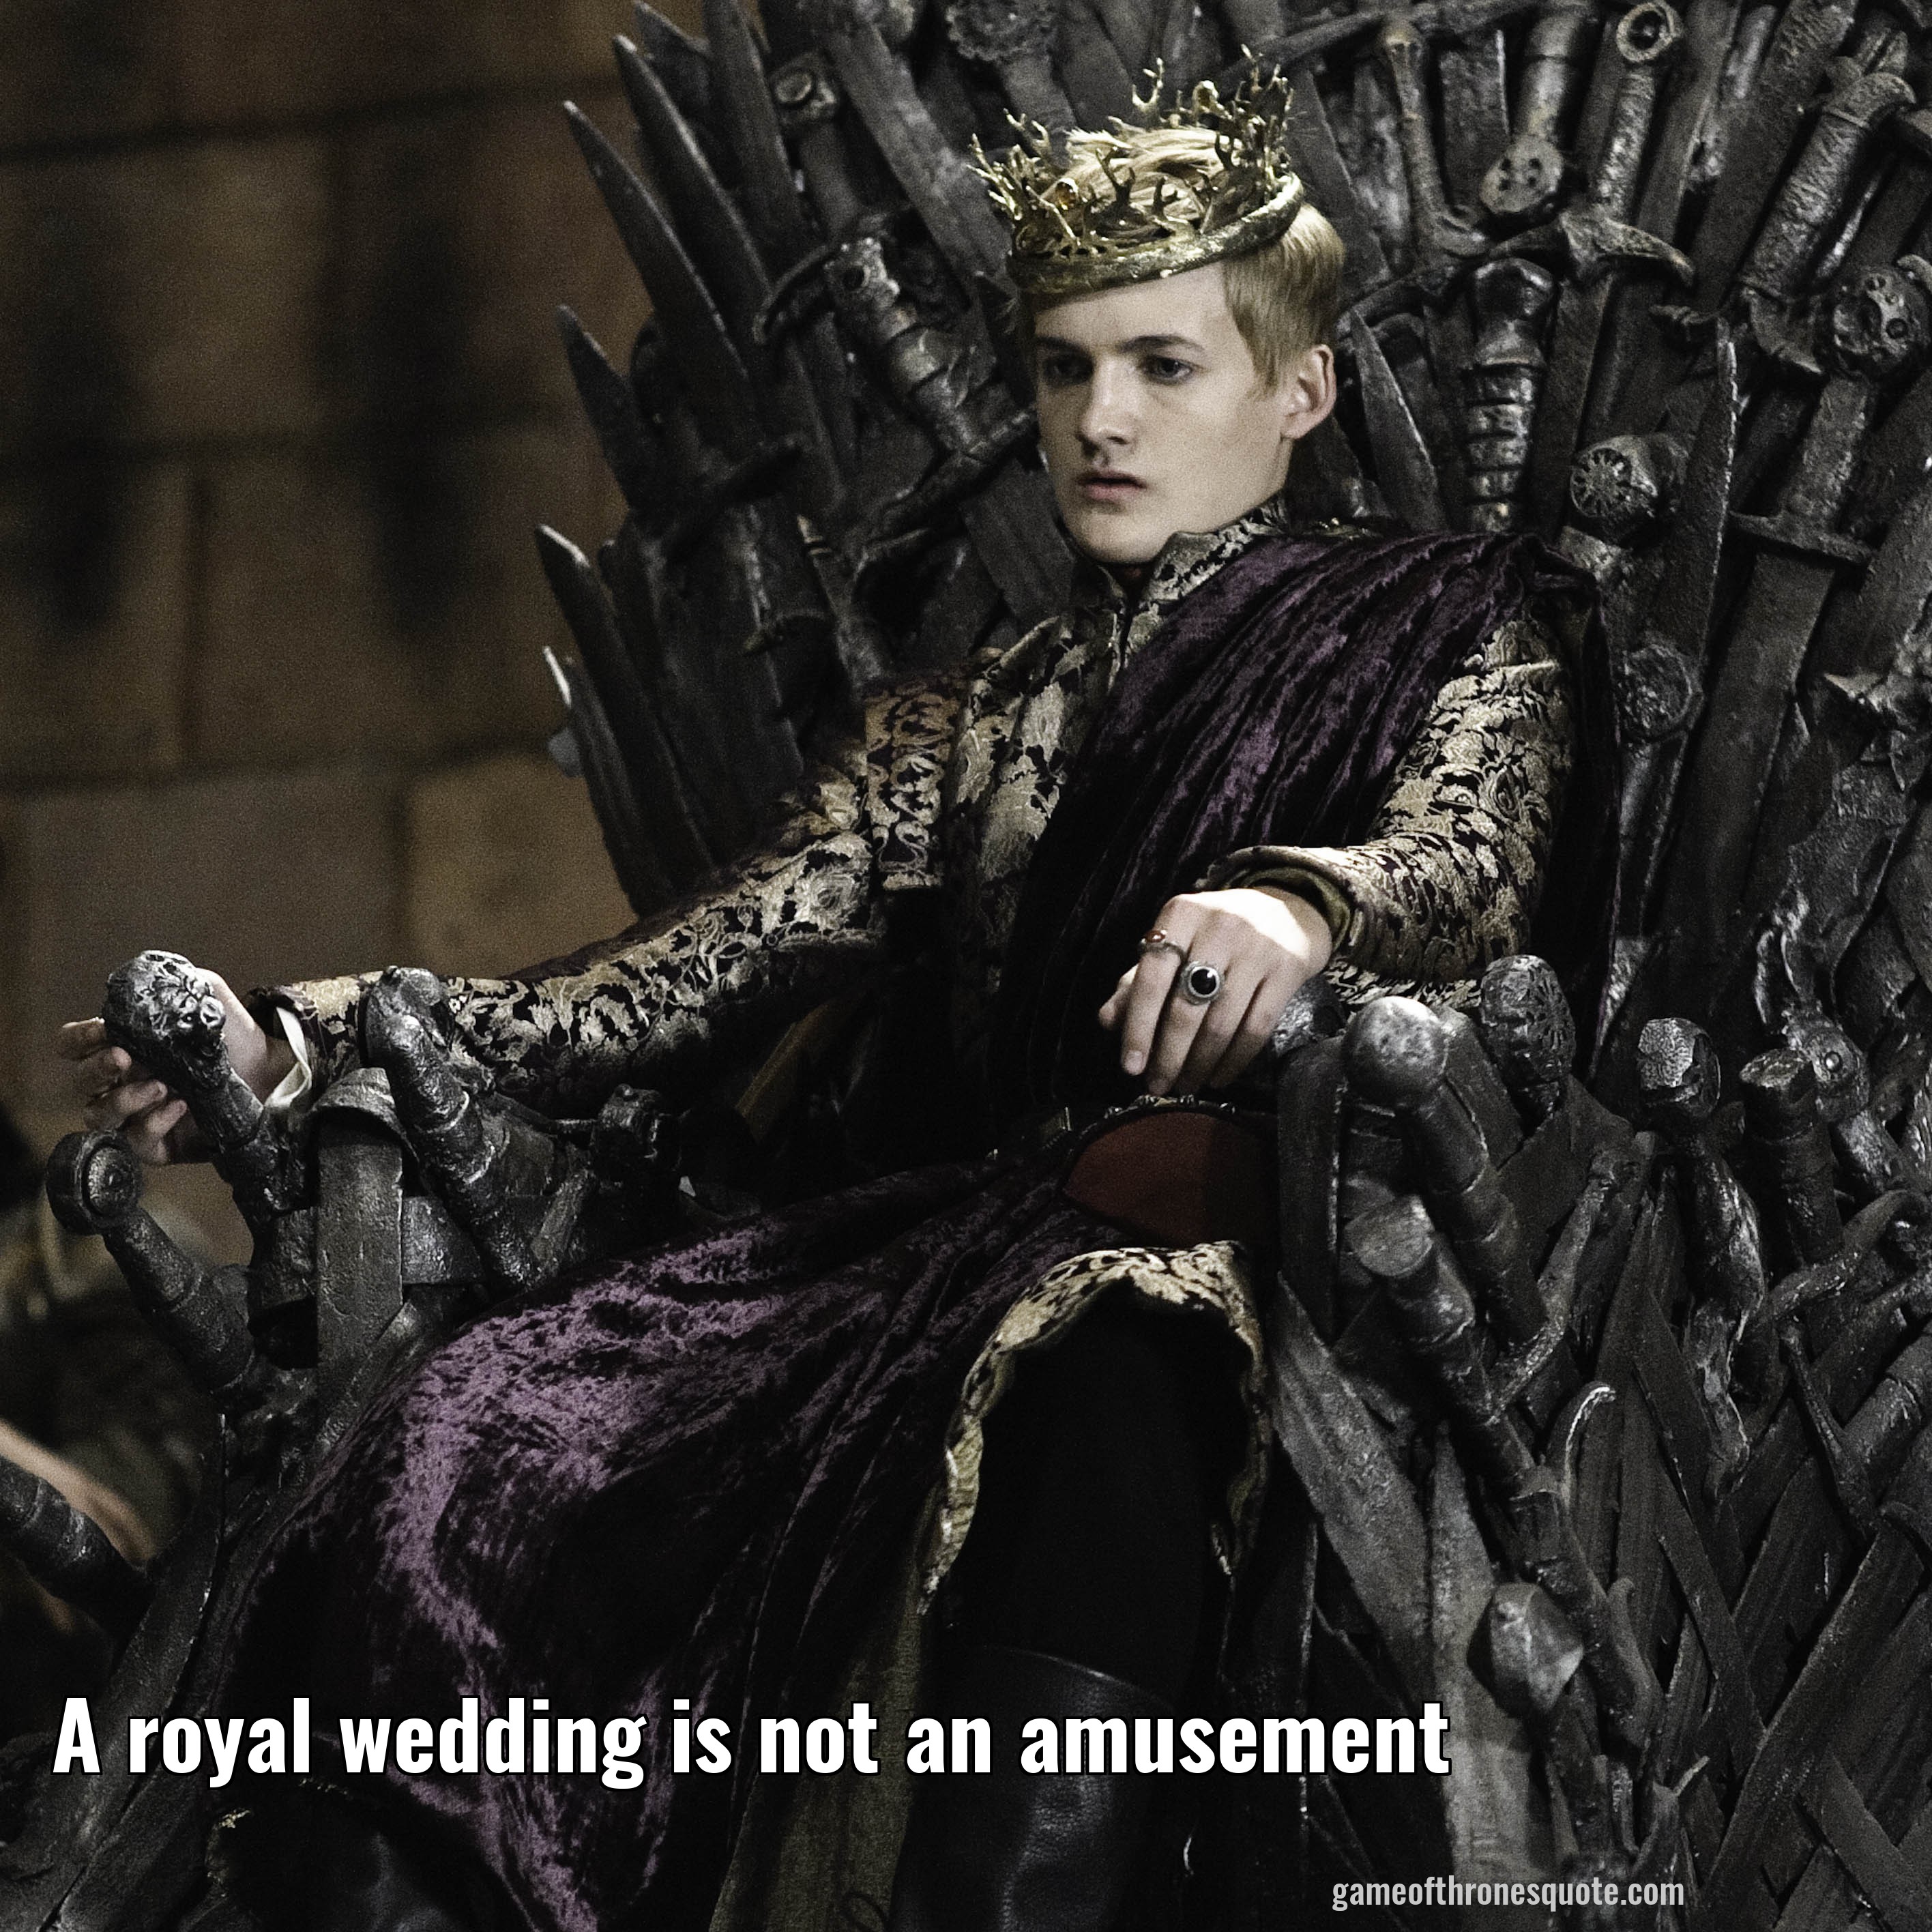 A royal wedding is not an amusement